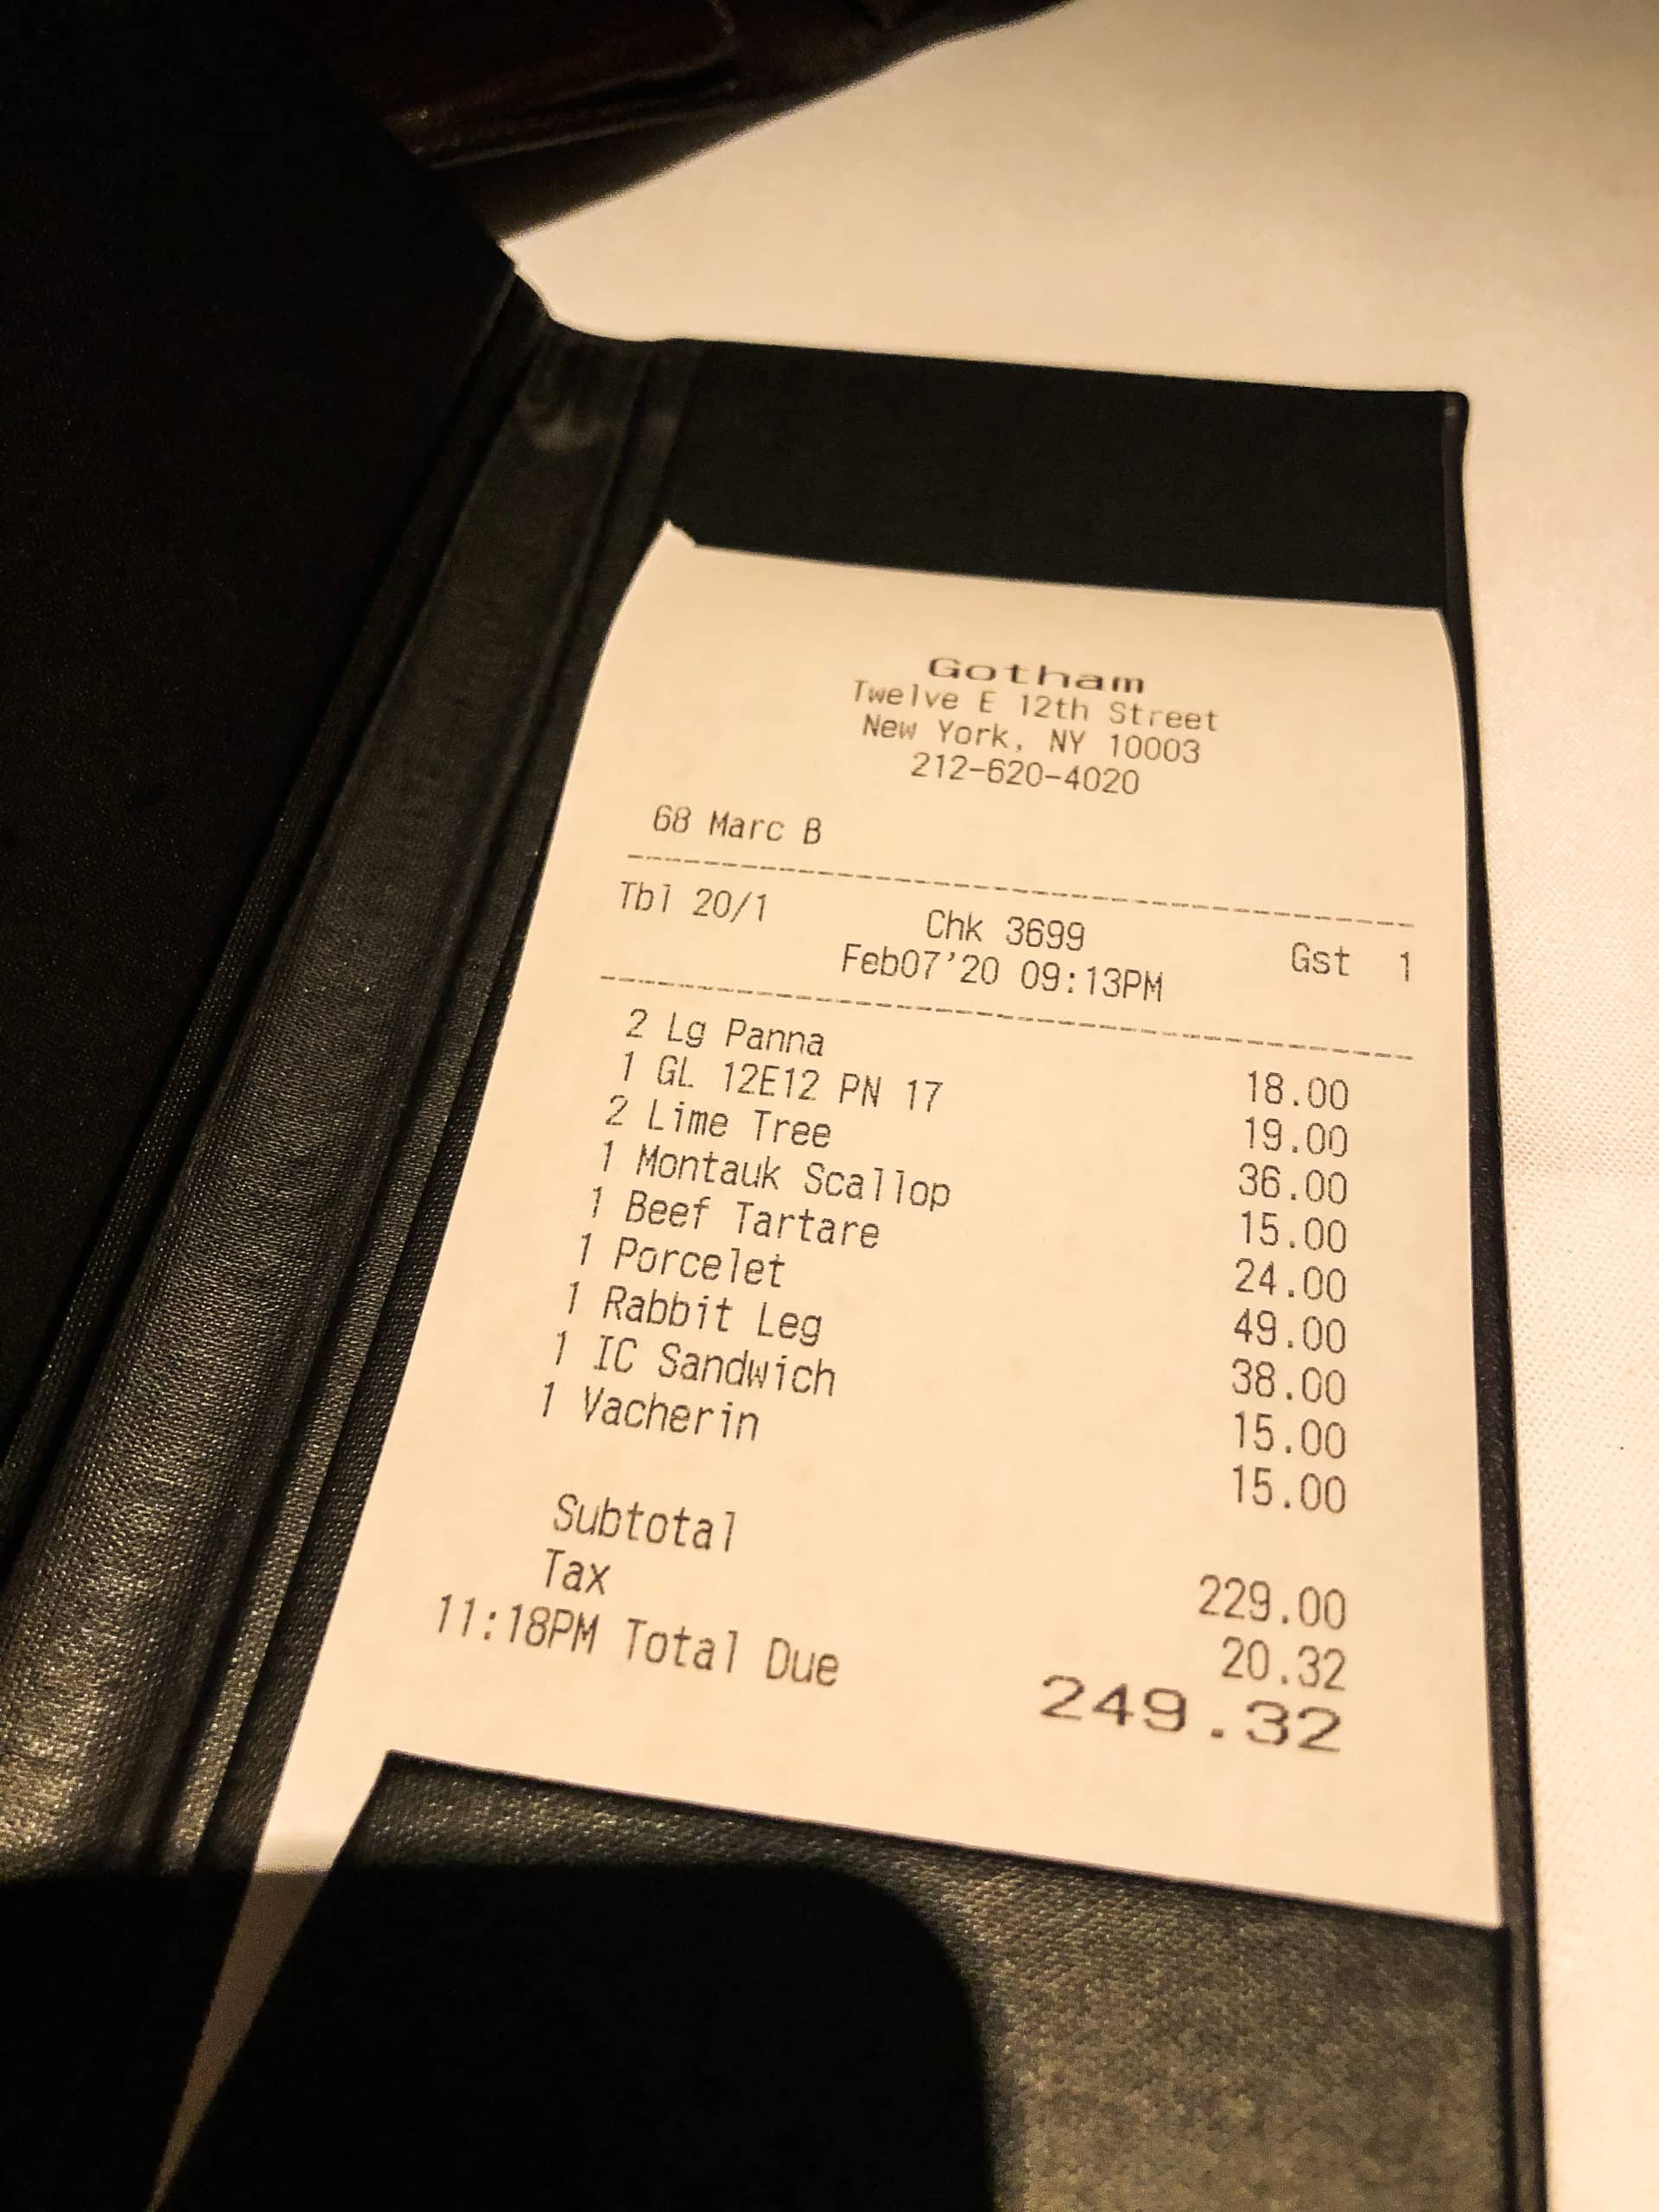 цены в ресторанах НЬю-Йорк, средний чек